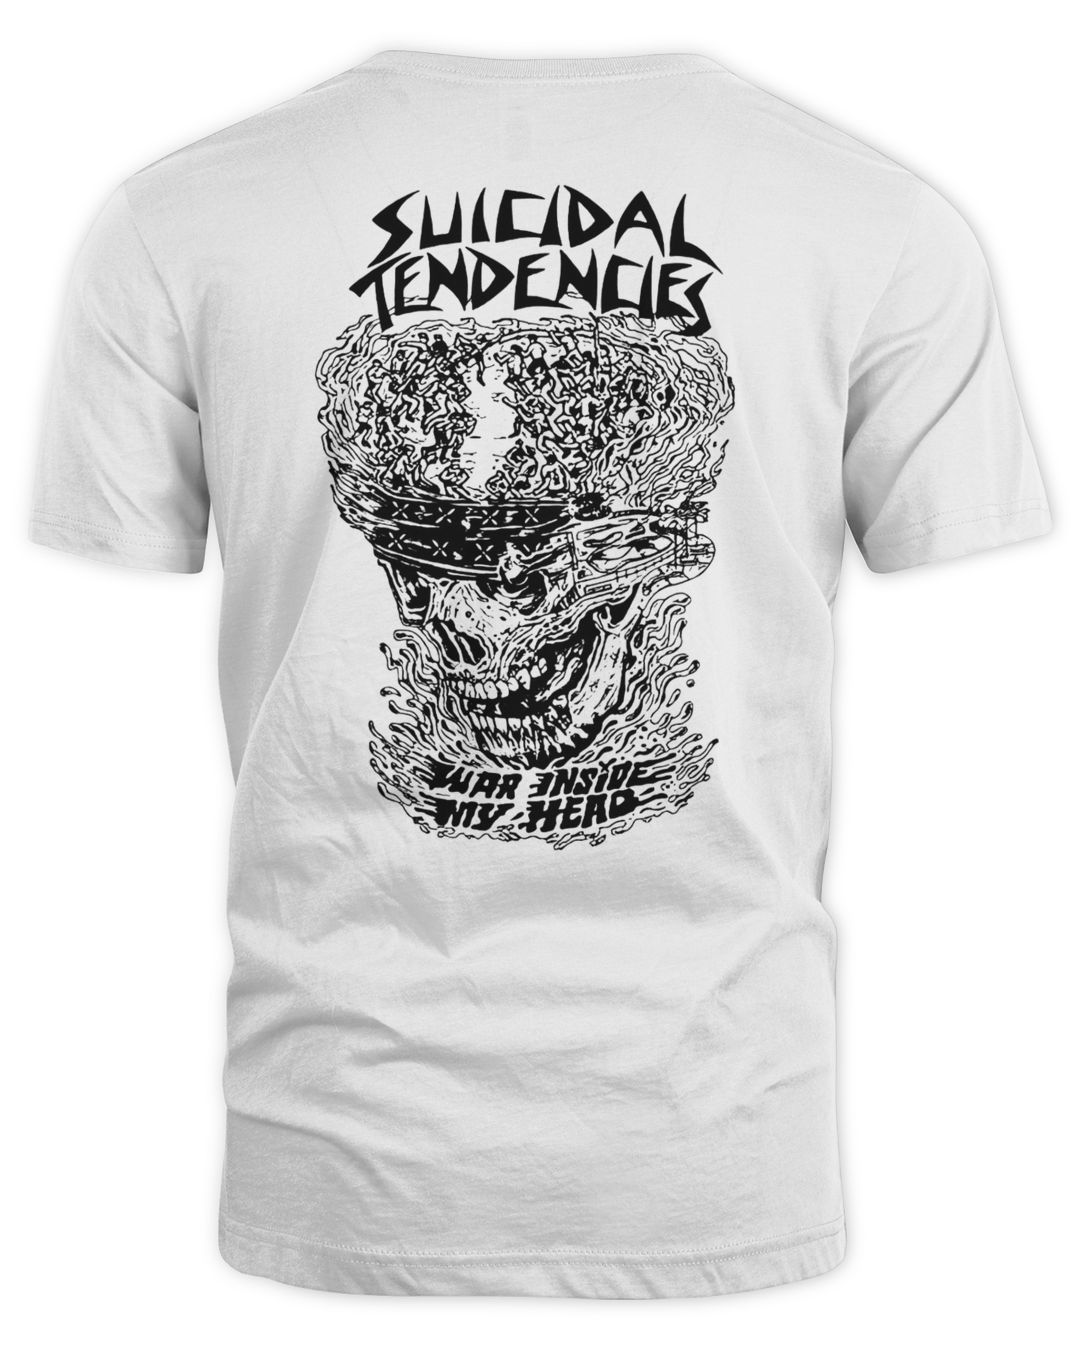 Suicidal Tendencies Merch Ts Vv War Inside My Head The Artist Series Shirt OGz